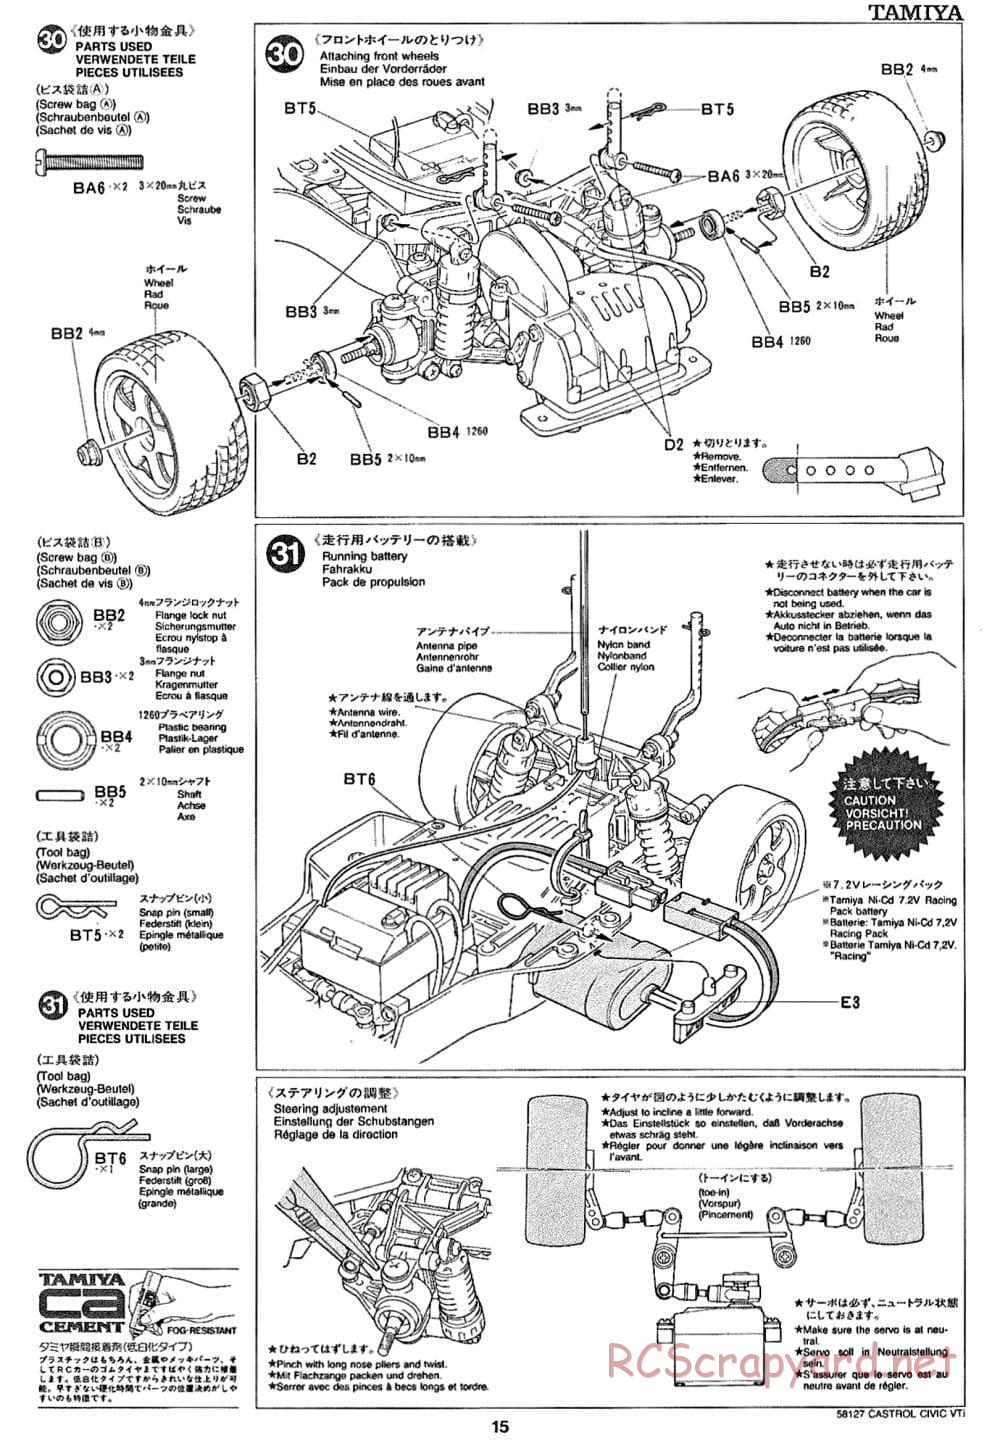 Tamiya - Castrol Honda Civic VTi - FF-01 Chassis - Manual - Page 15